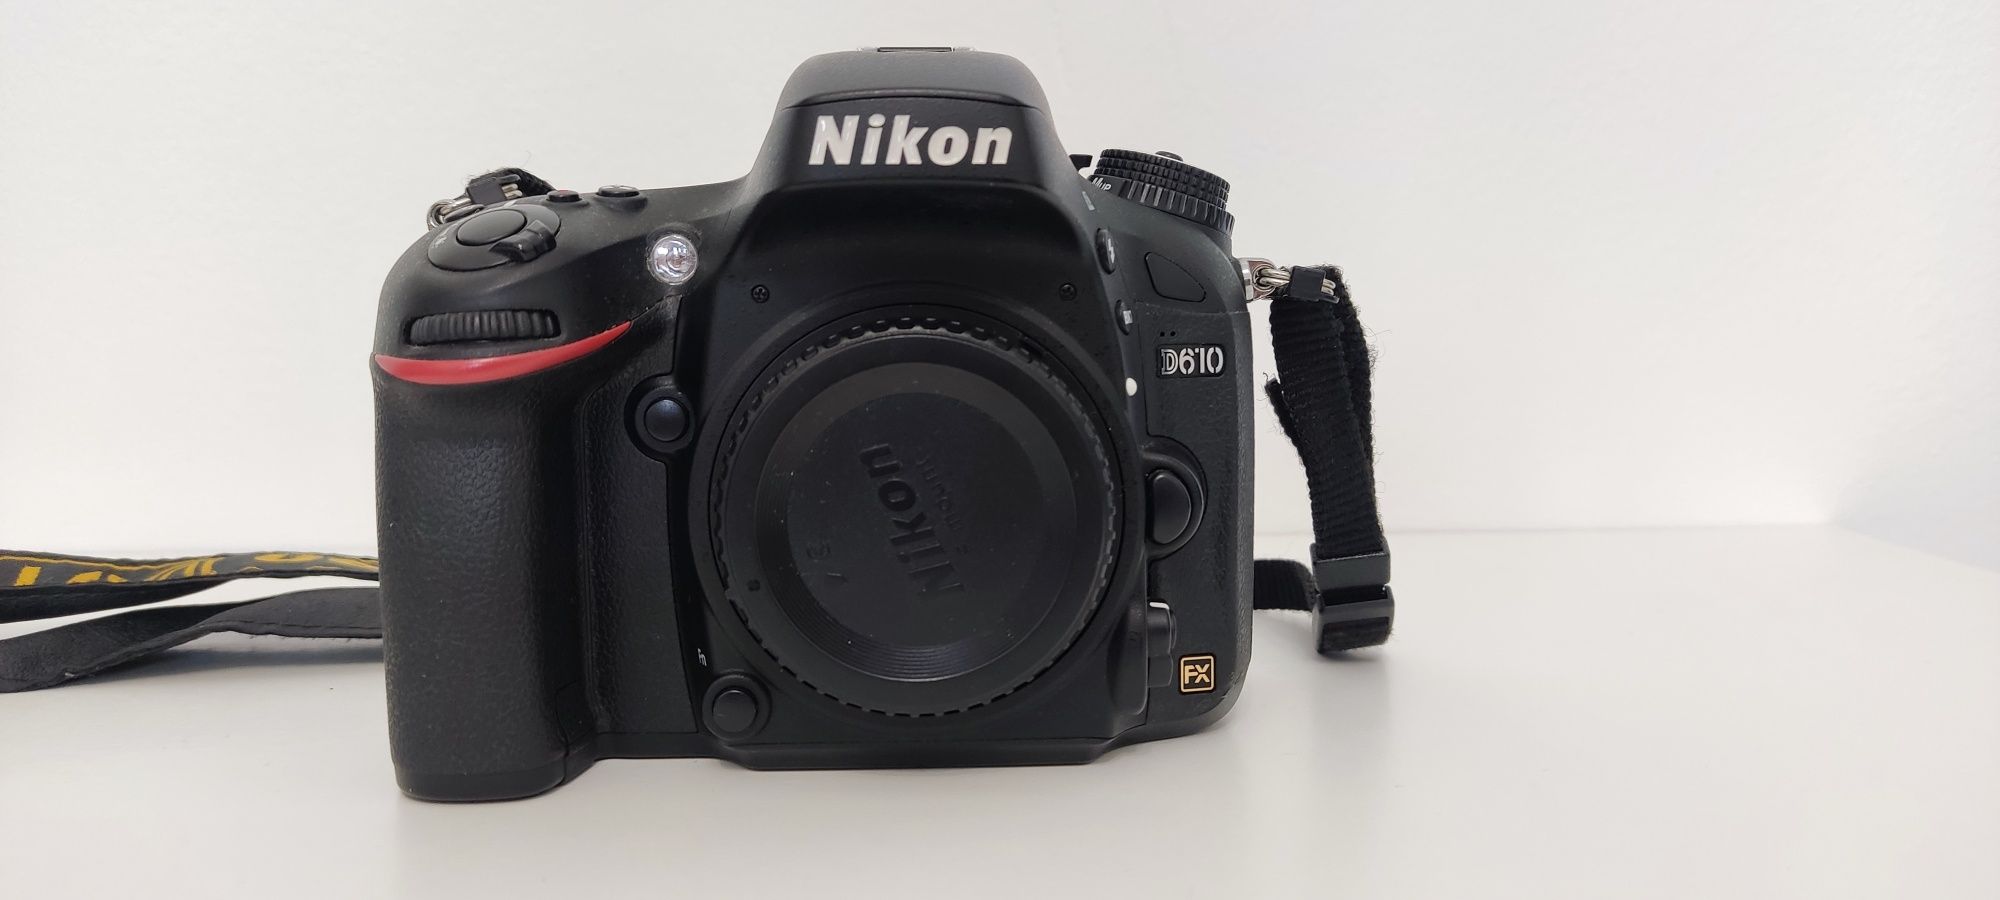 Nikon D610 full-frame